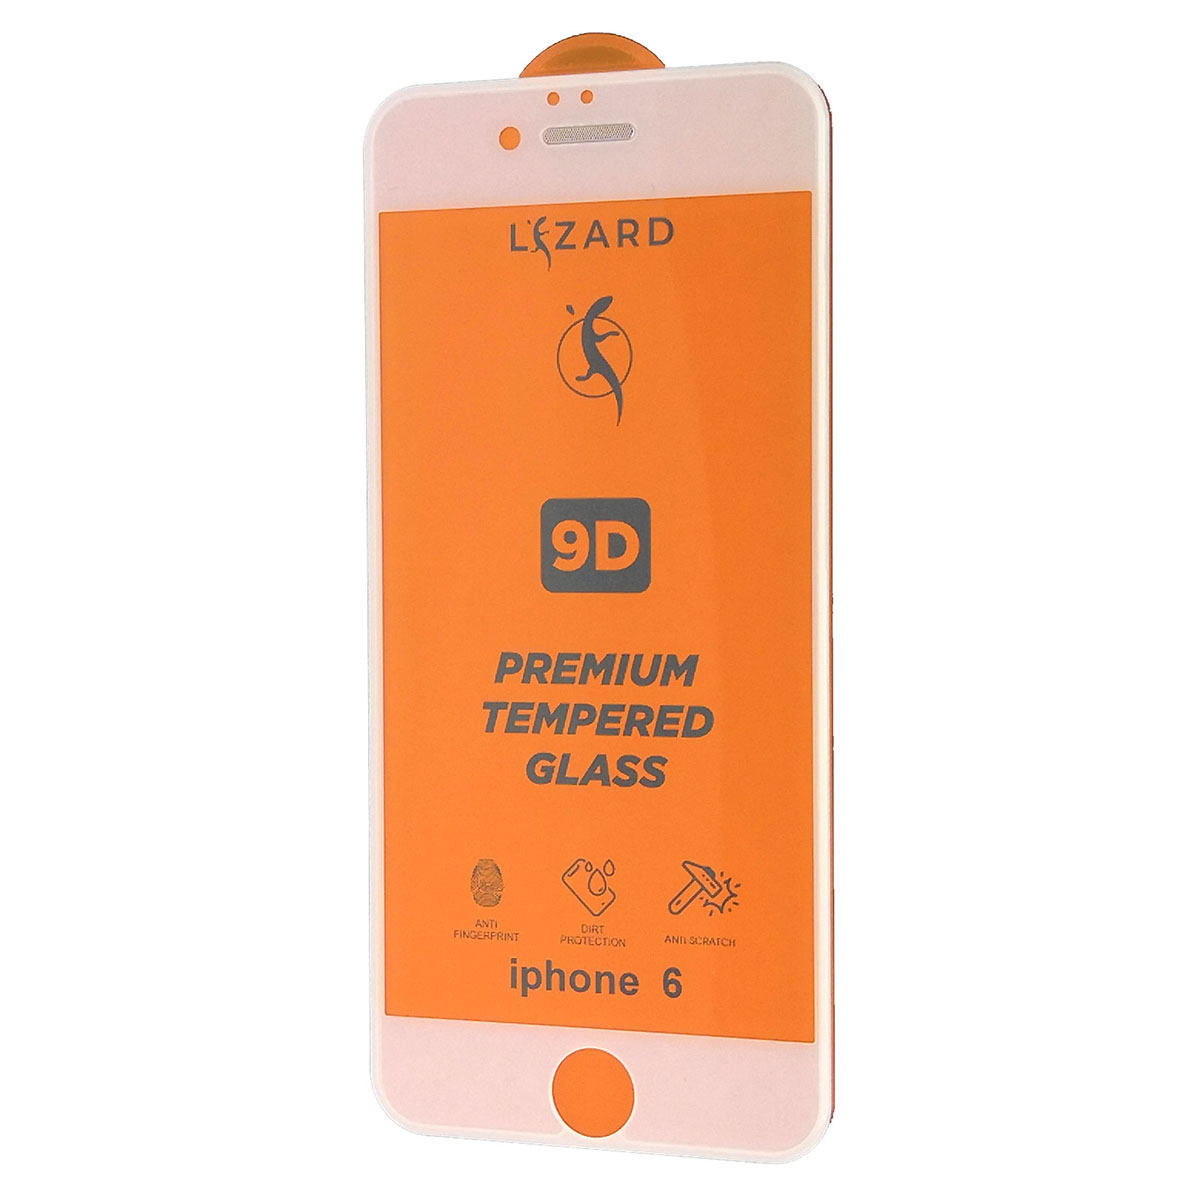 Защитное стекло 9D Lizard для APPLE iPhone 6, iPhone 6S, с сеточкой на динамике, цвет белый.